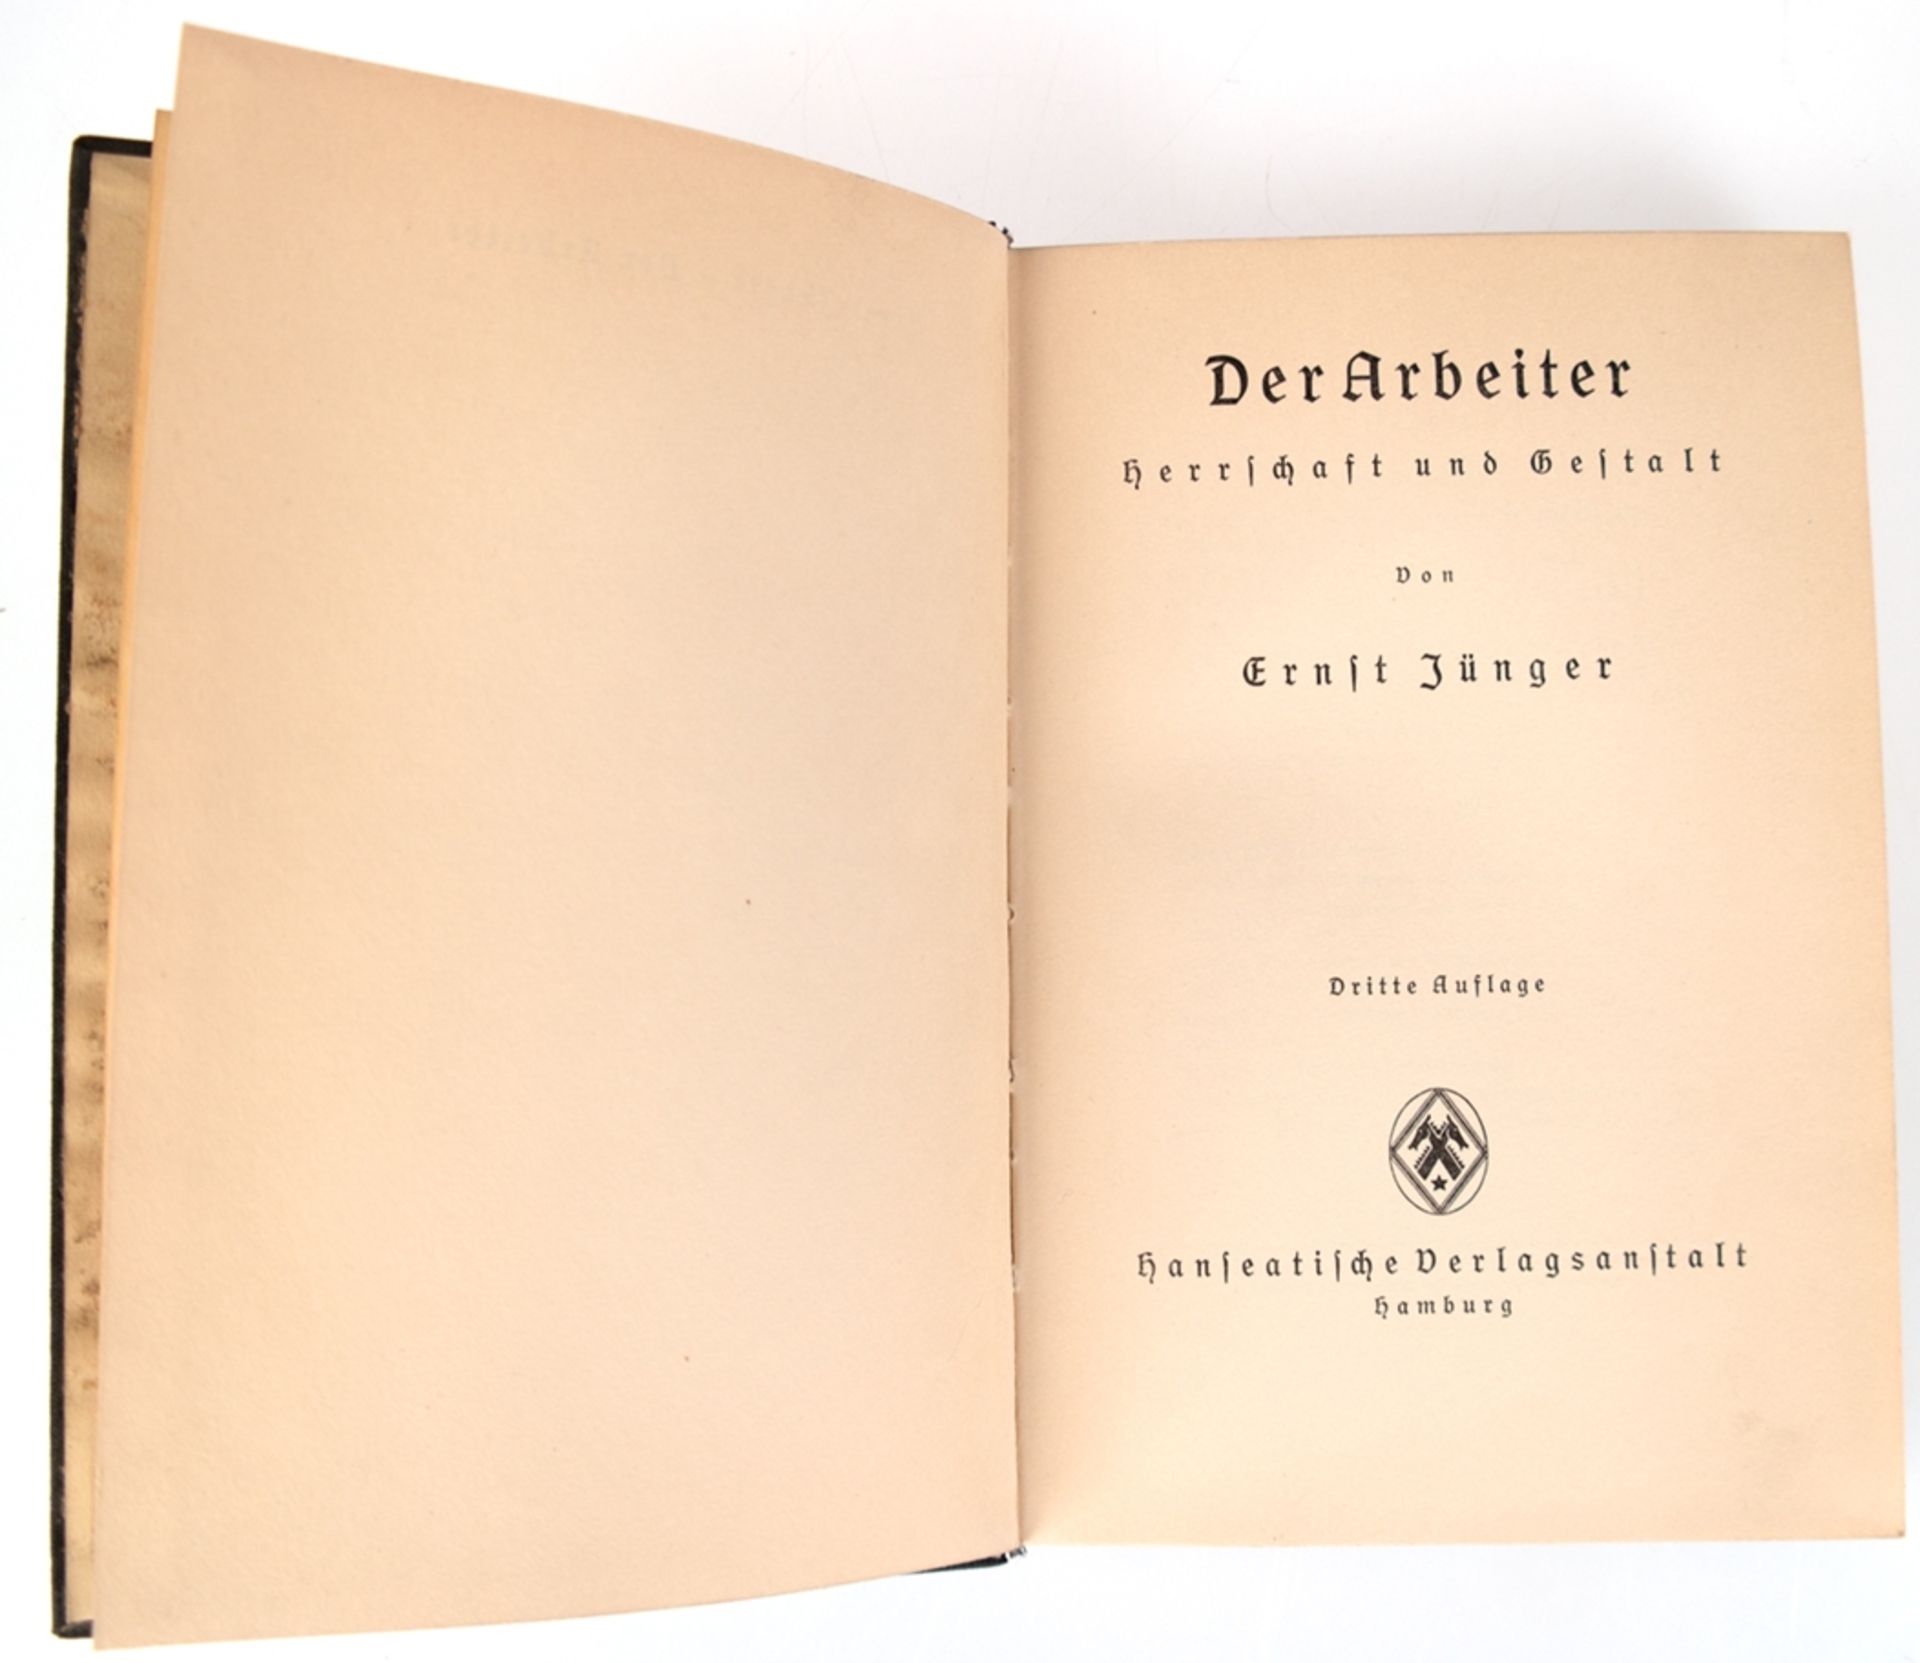 Jünger, Ernst "Der Arbeiter", 1932, Hanseatische Verlagsanstalt Hamburg